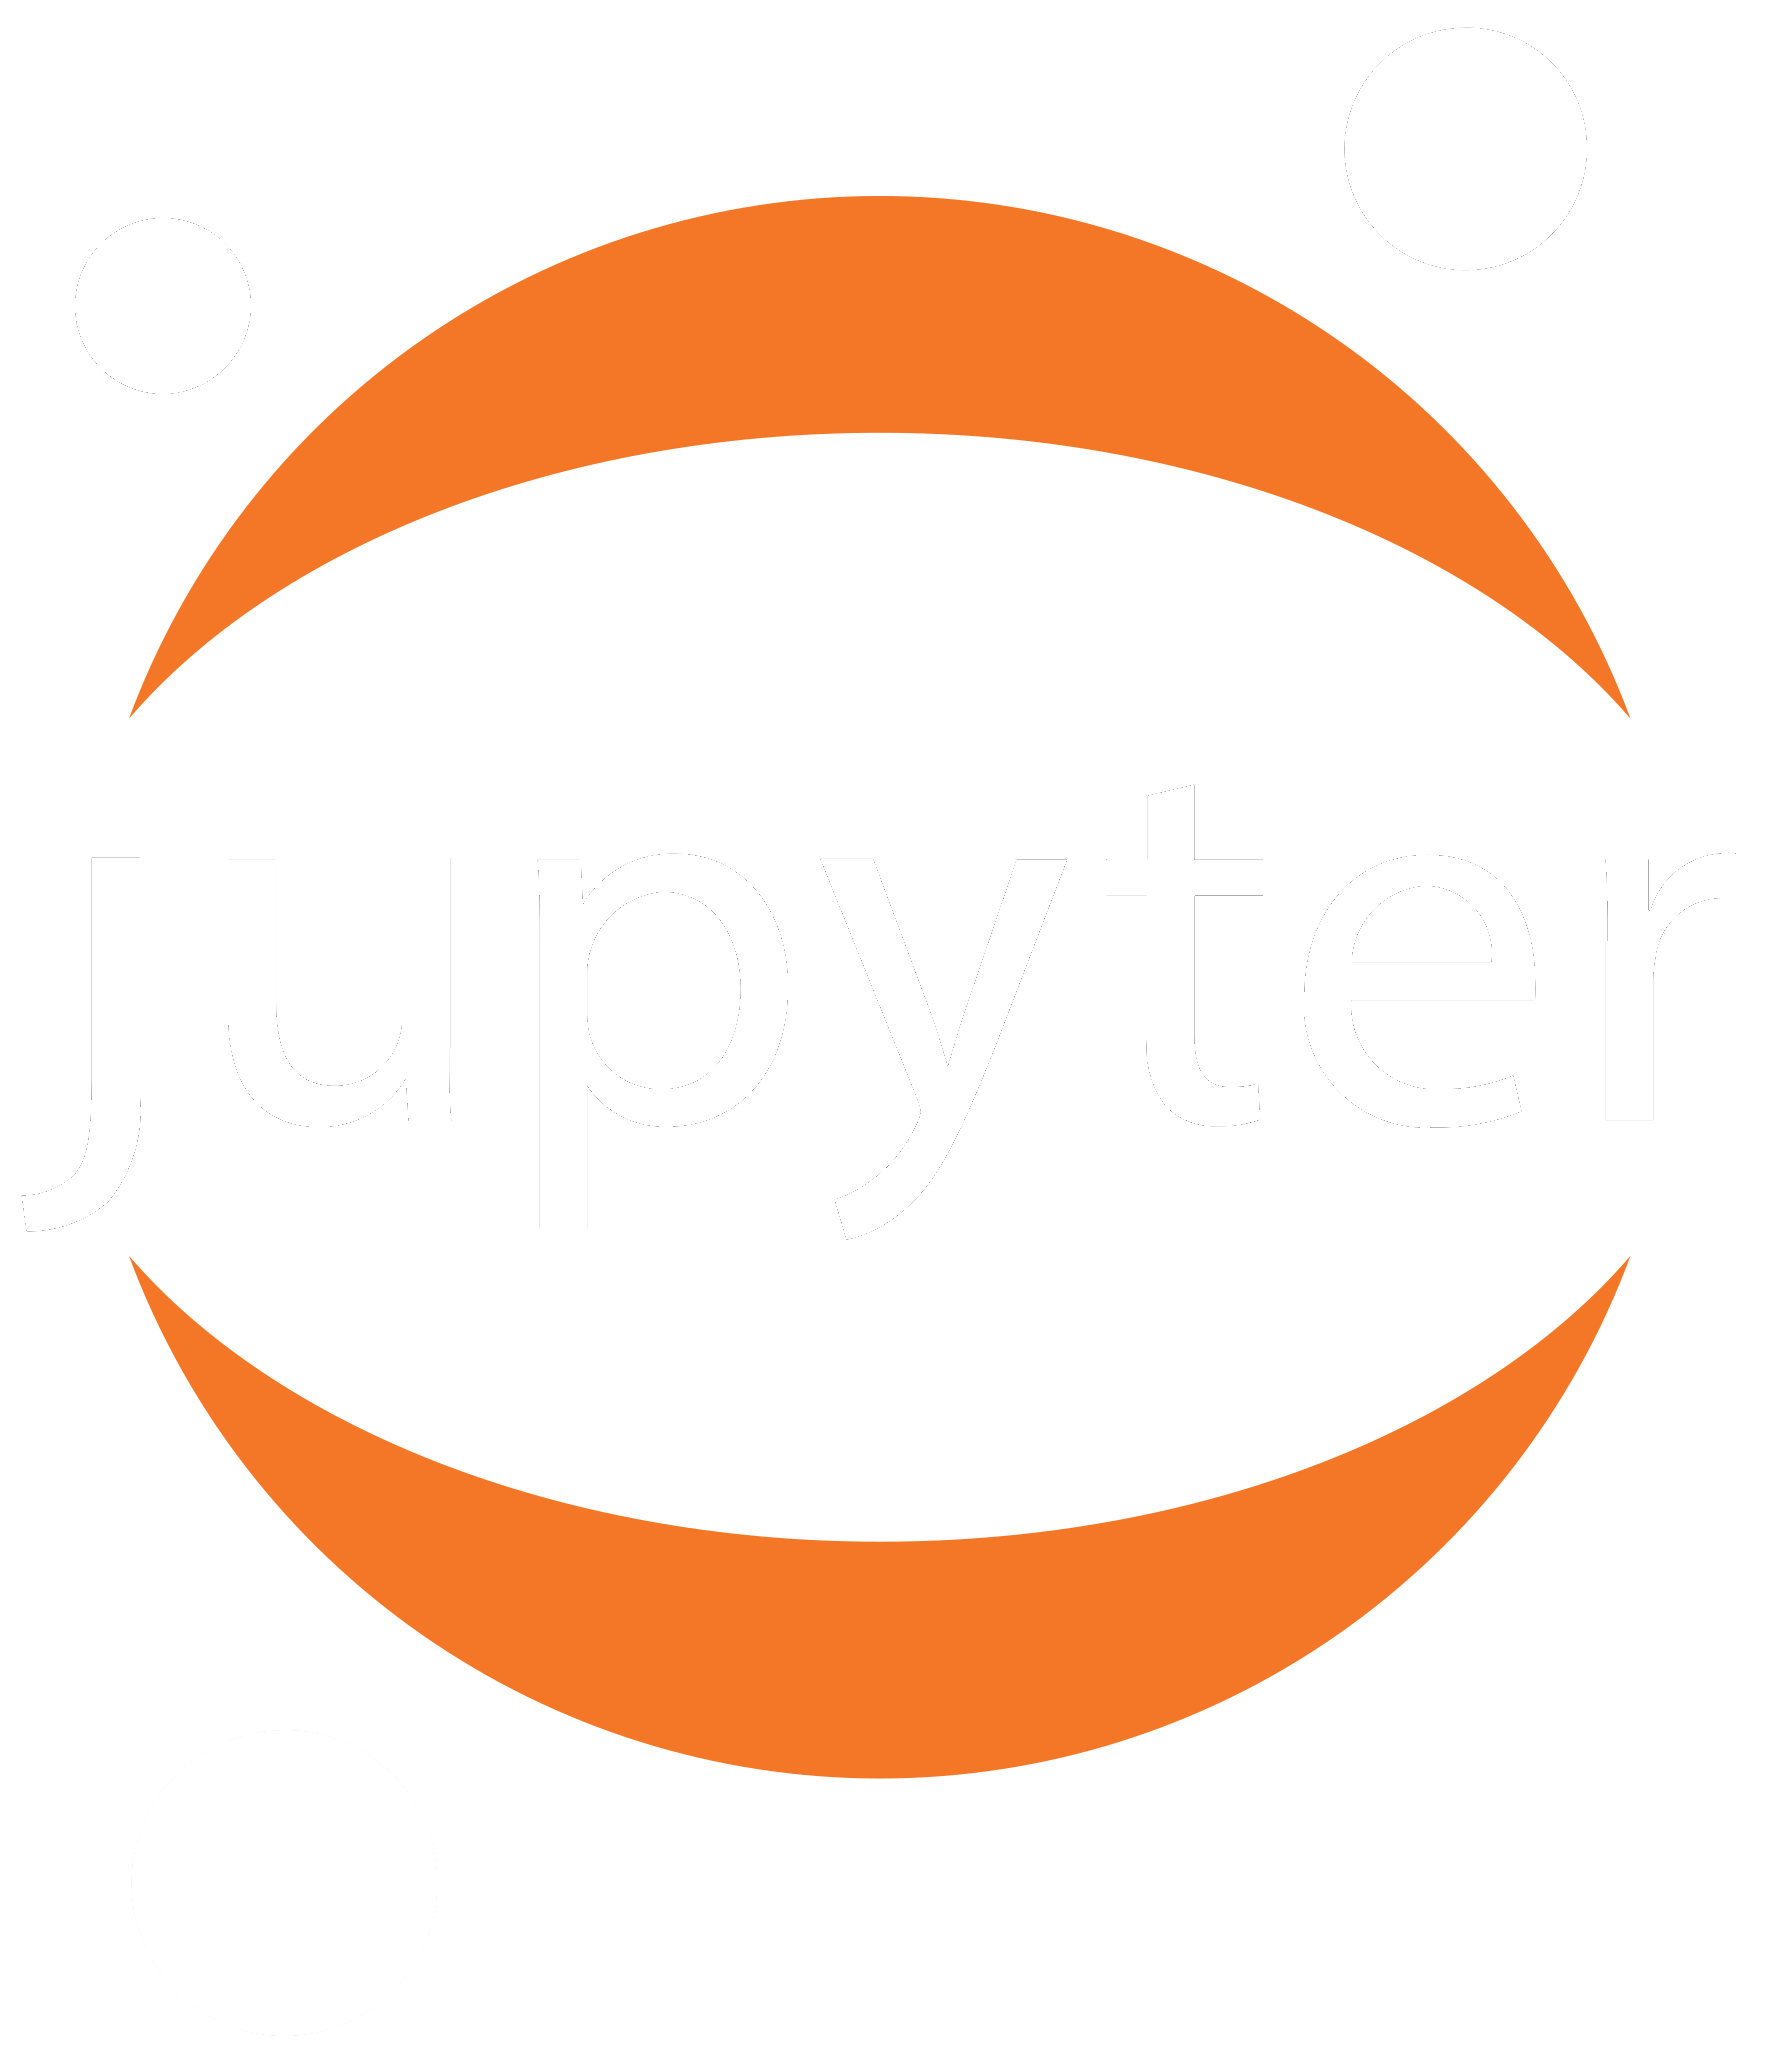 Jupyter Notebook